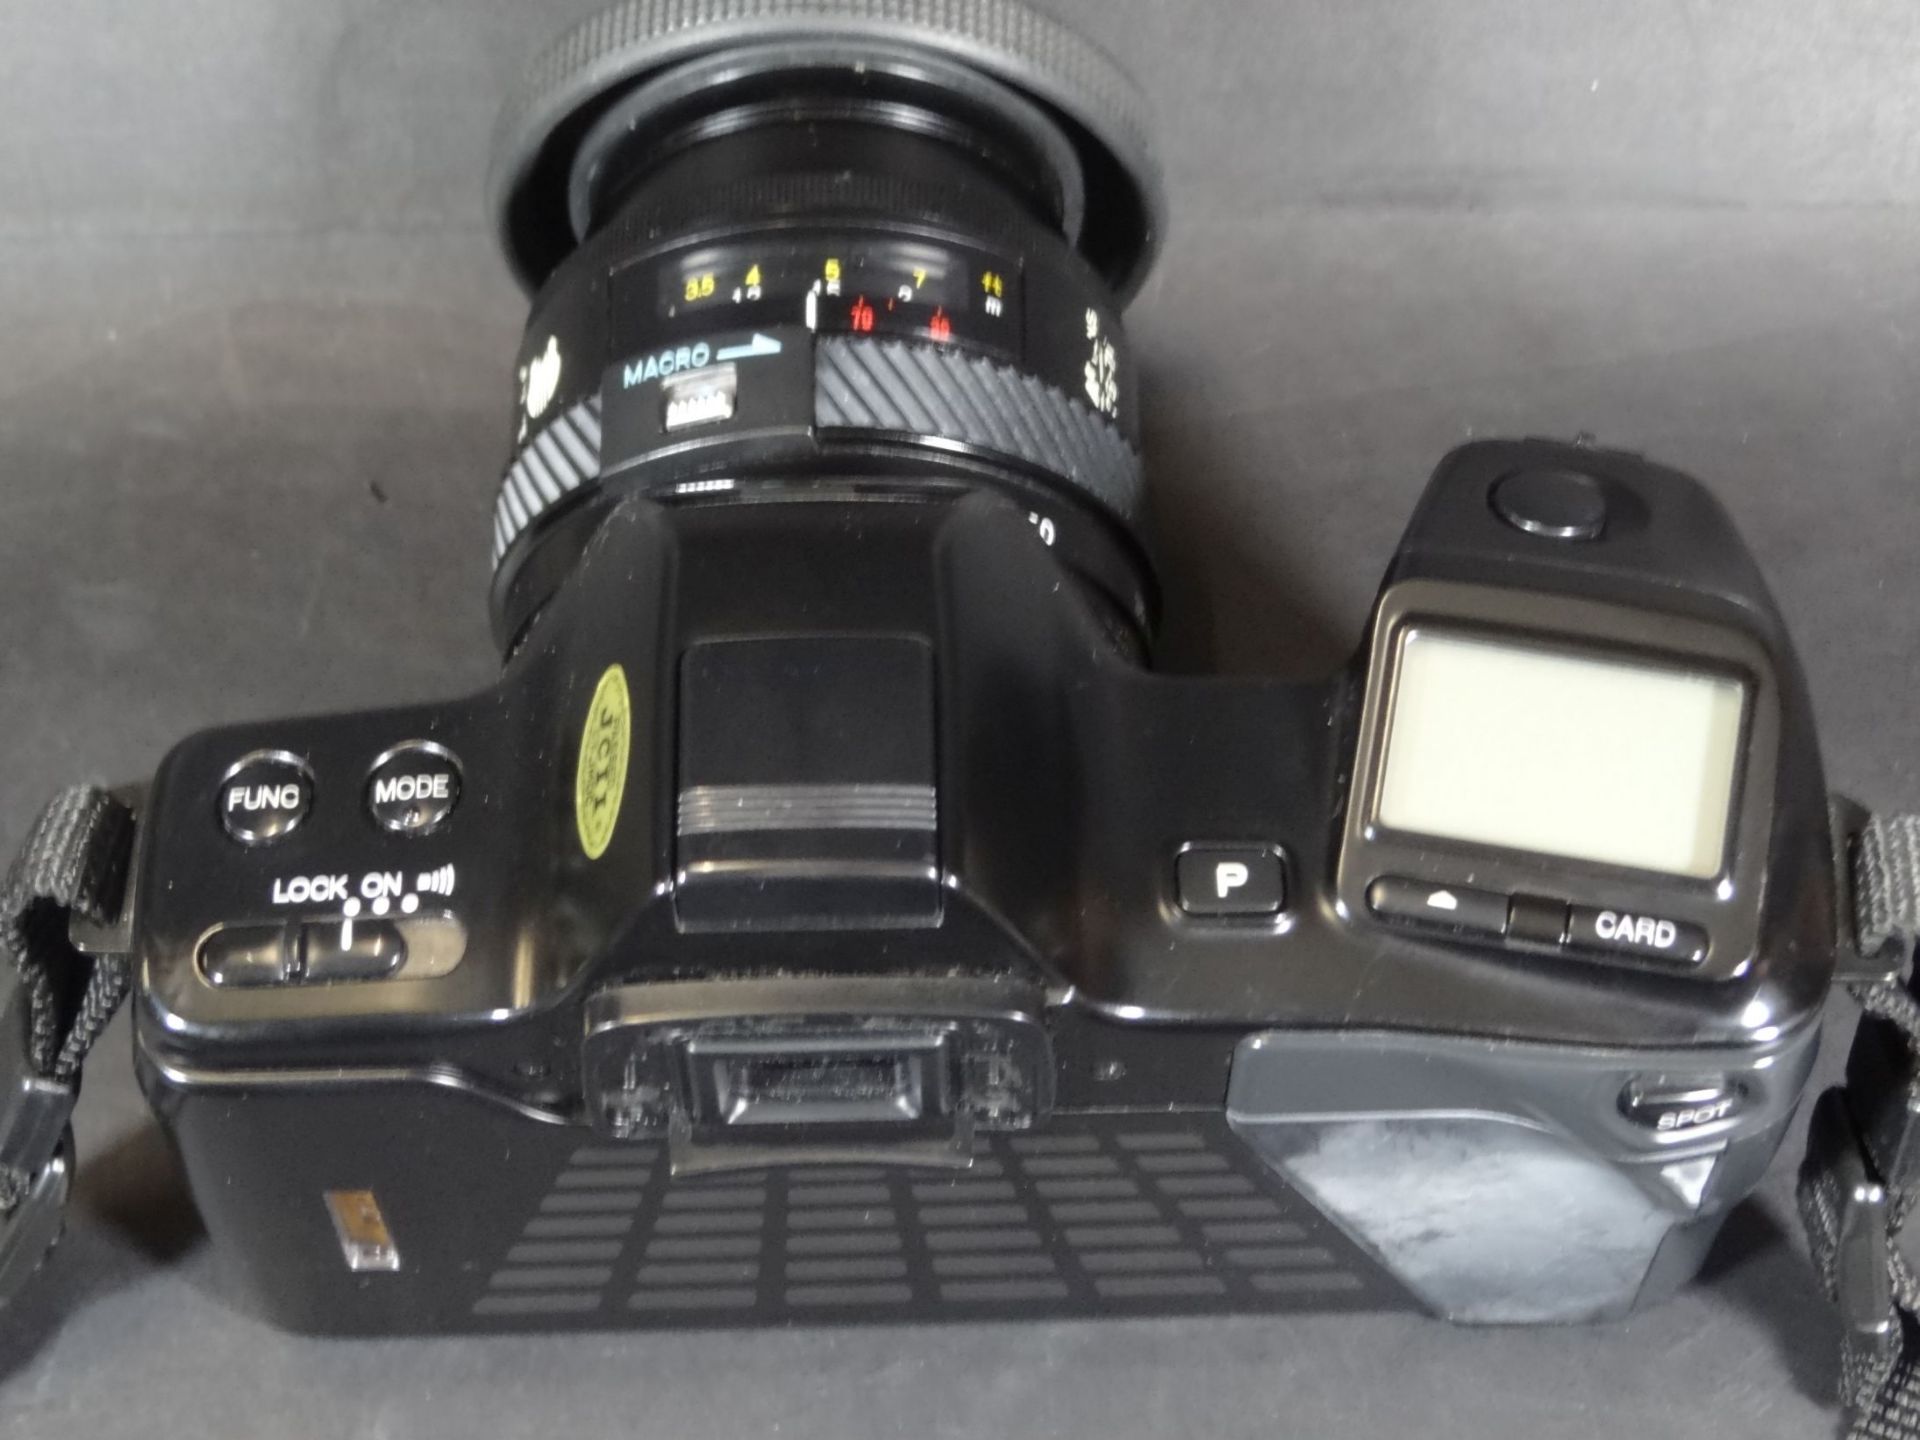 Spiegelreflex-Kamera "Minolta Dynax 7000" in Tasche mit Zubehö- - -22.61 % buyer's premium on the - Bild 5 aus 7